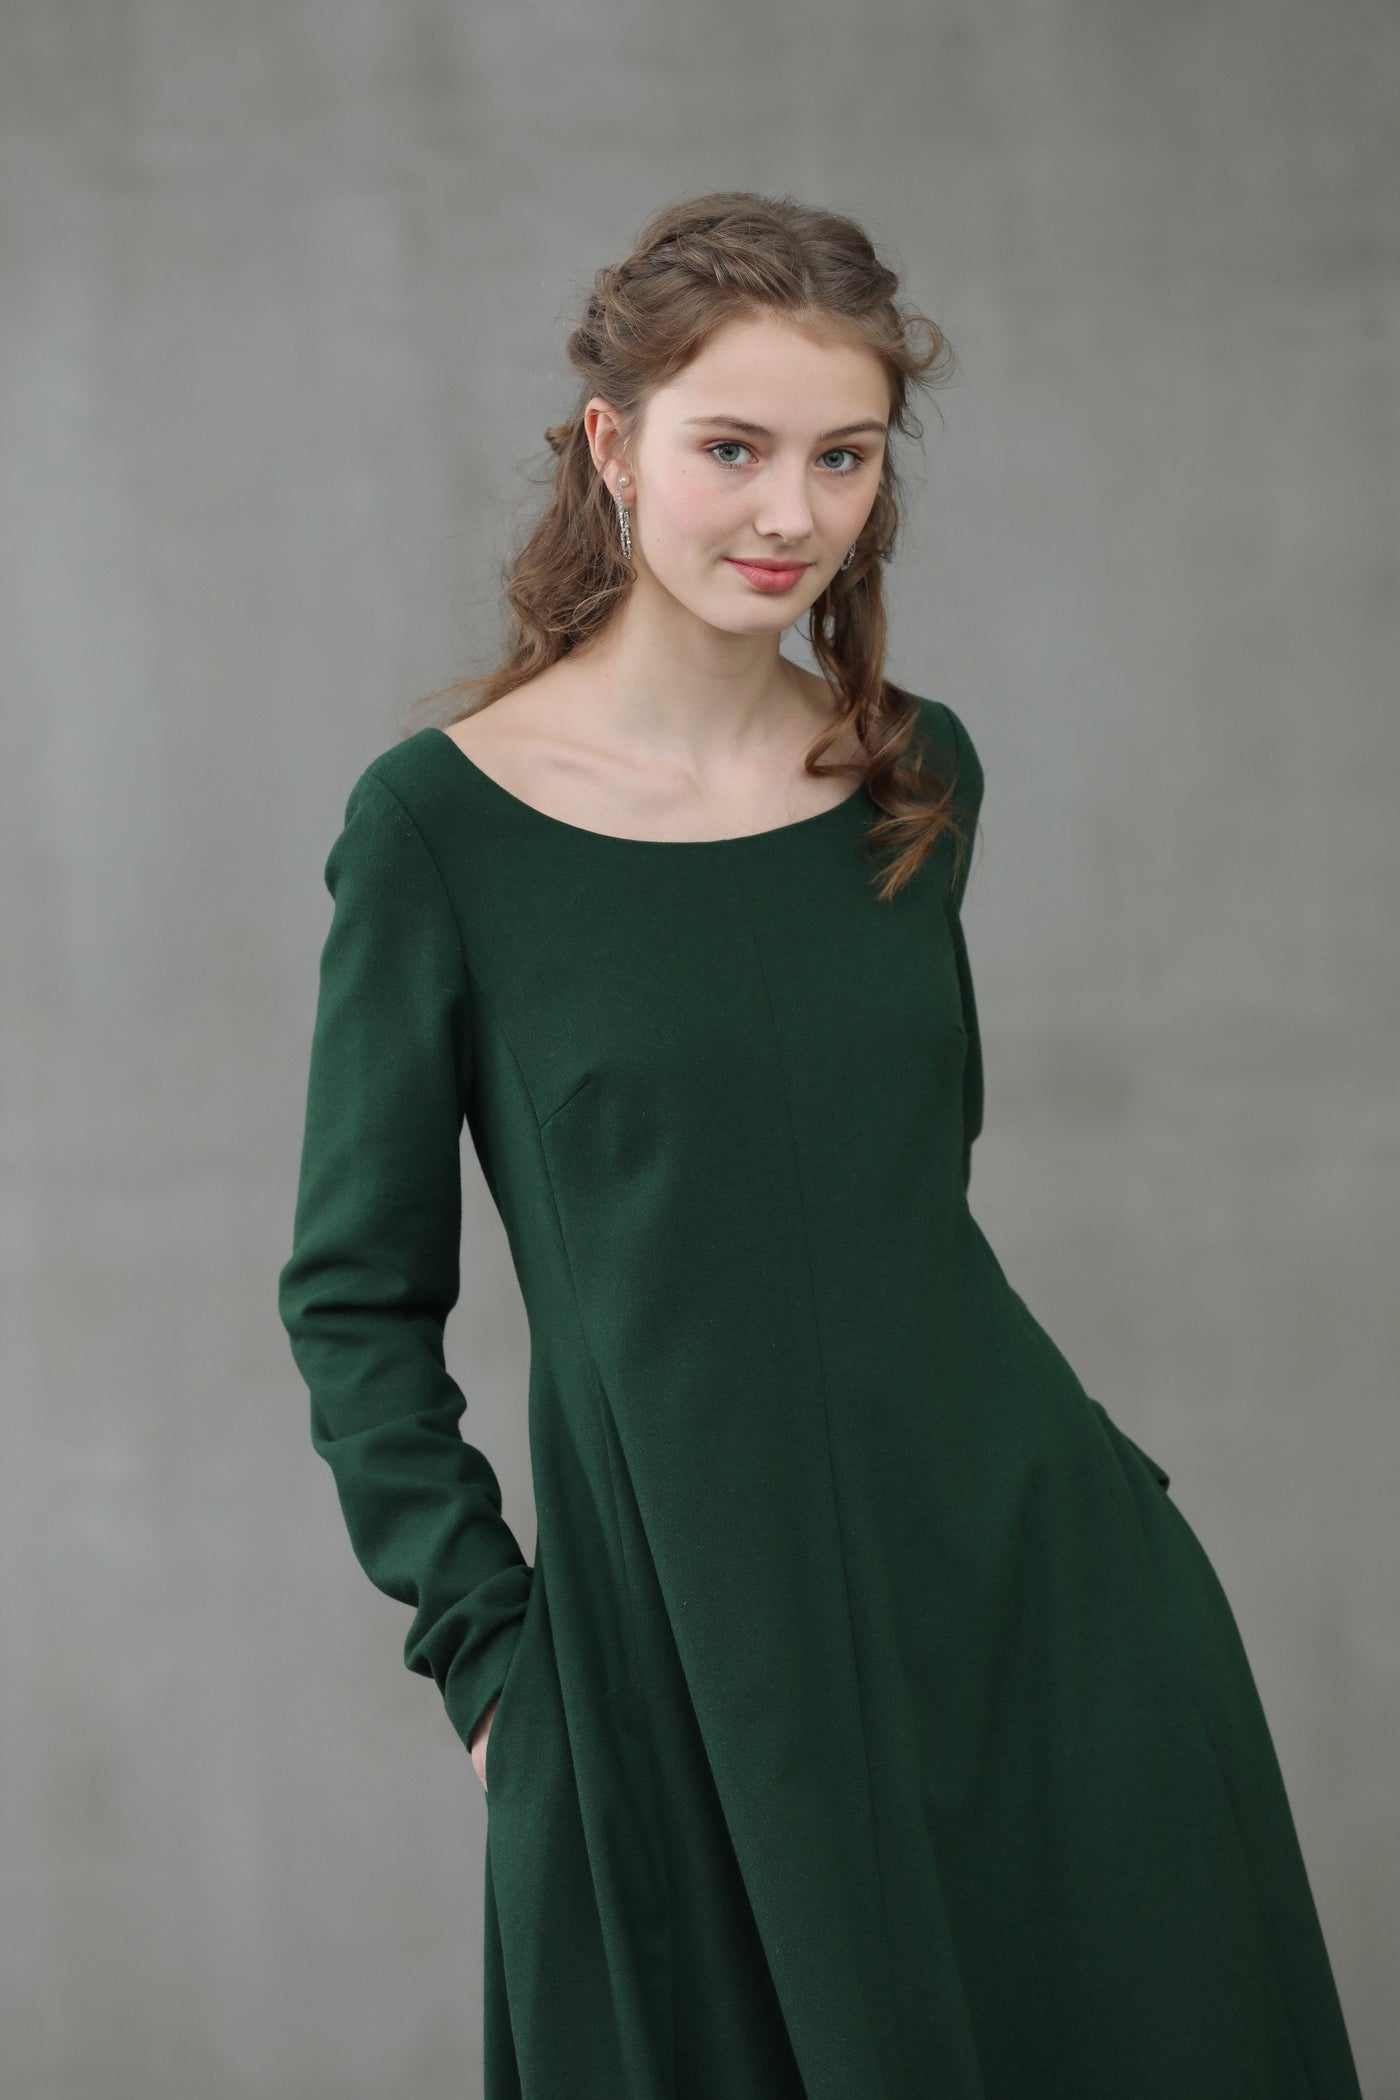 Mistletoe 17 | 100% wool green dress